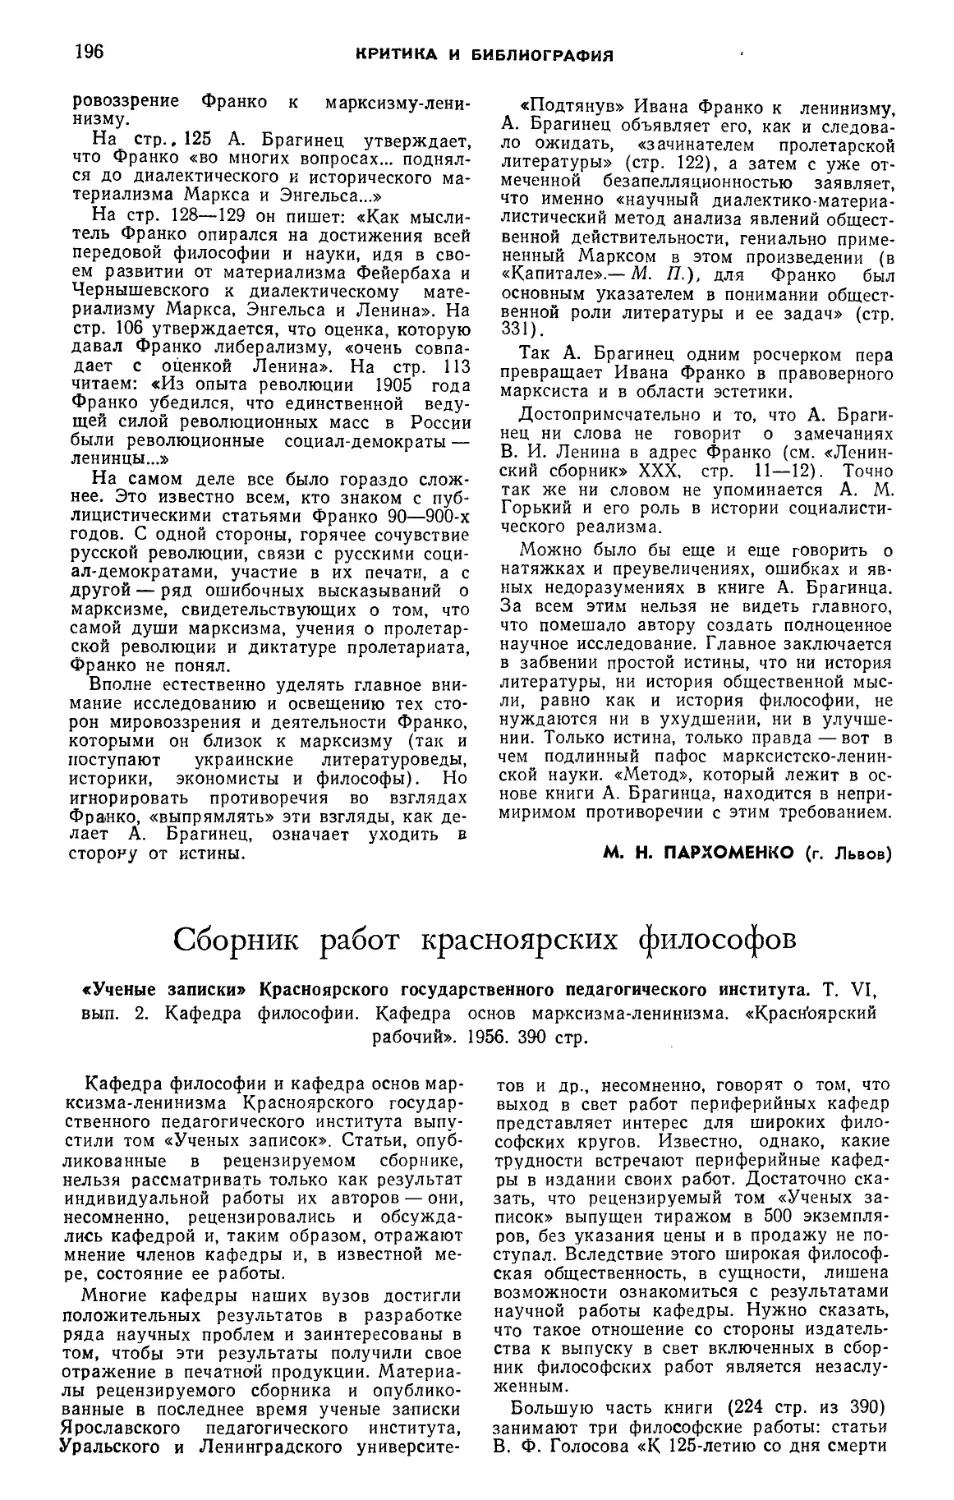 М. Я. Ковальзон, Г. Ф. Хрустов — Сборник работ красноярских философов